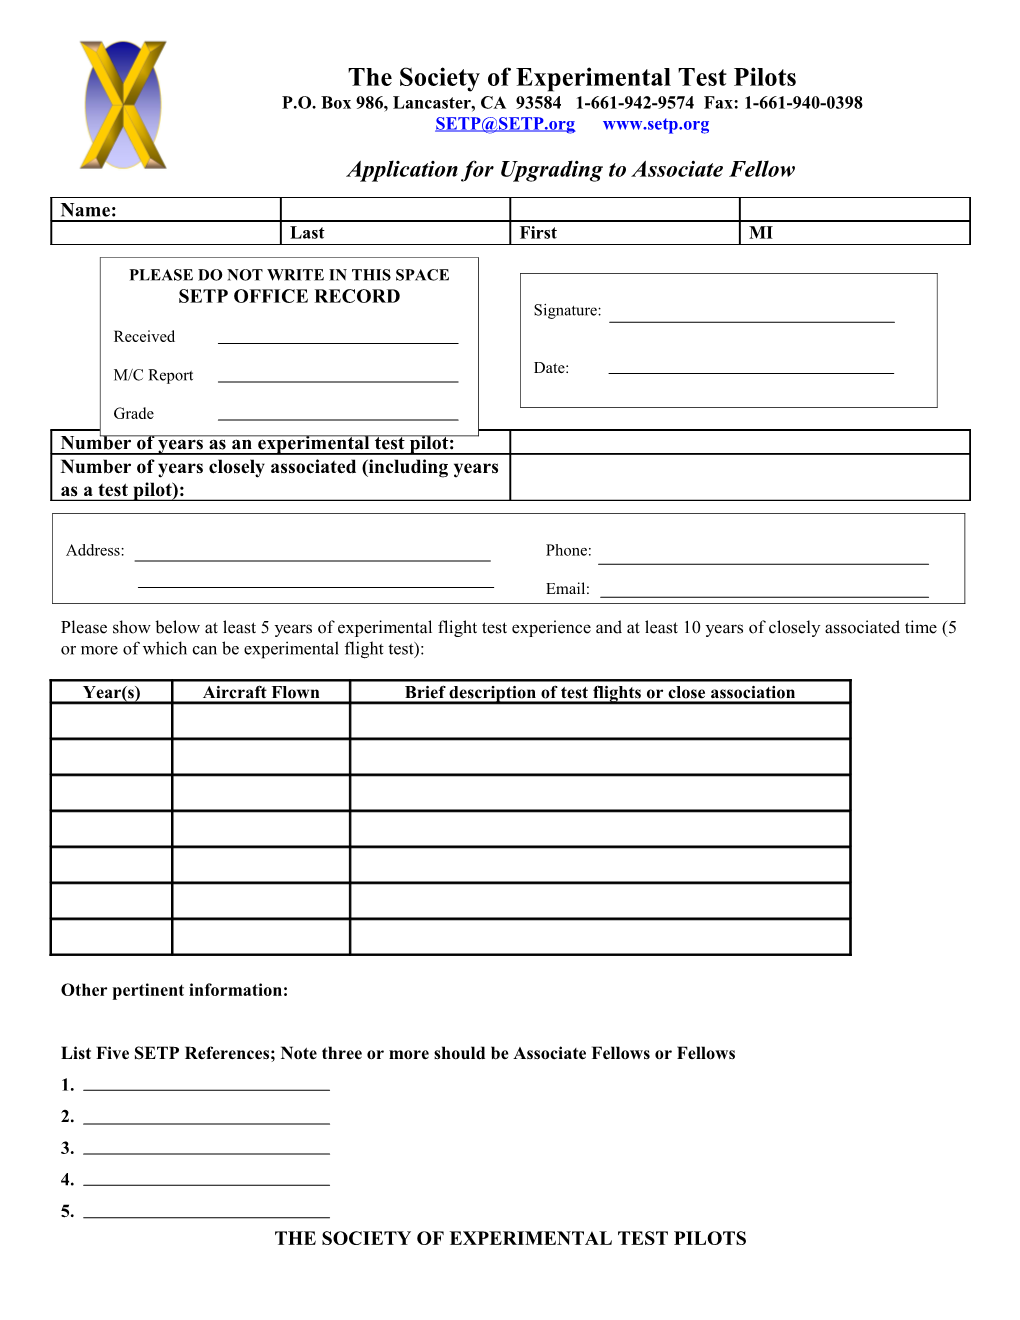 Application for Initial Membership